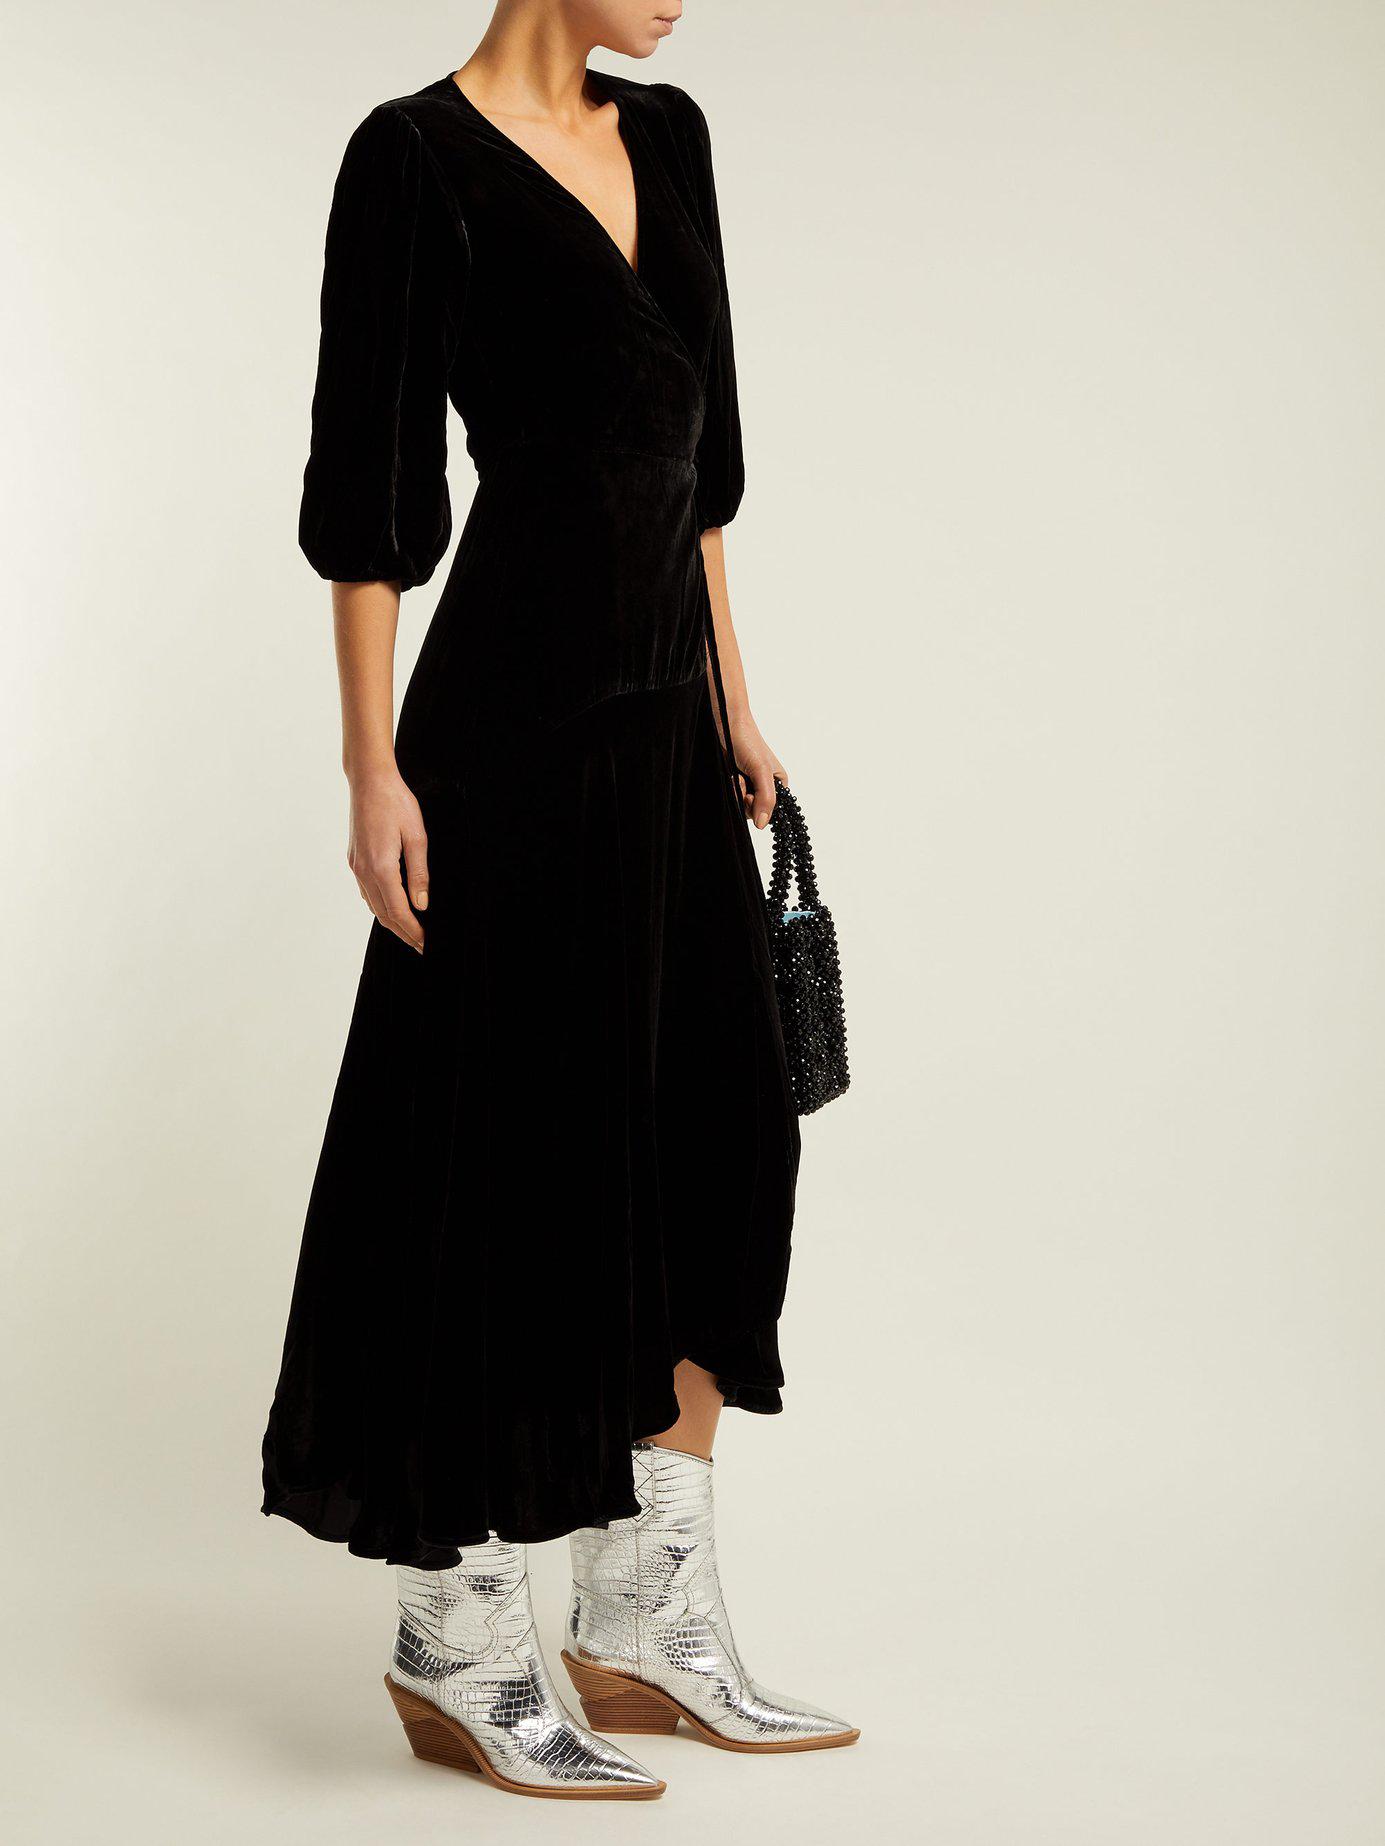 Ganni Aldine Velvet Wrap Dress in Black | Lyst